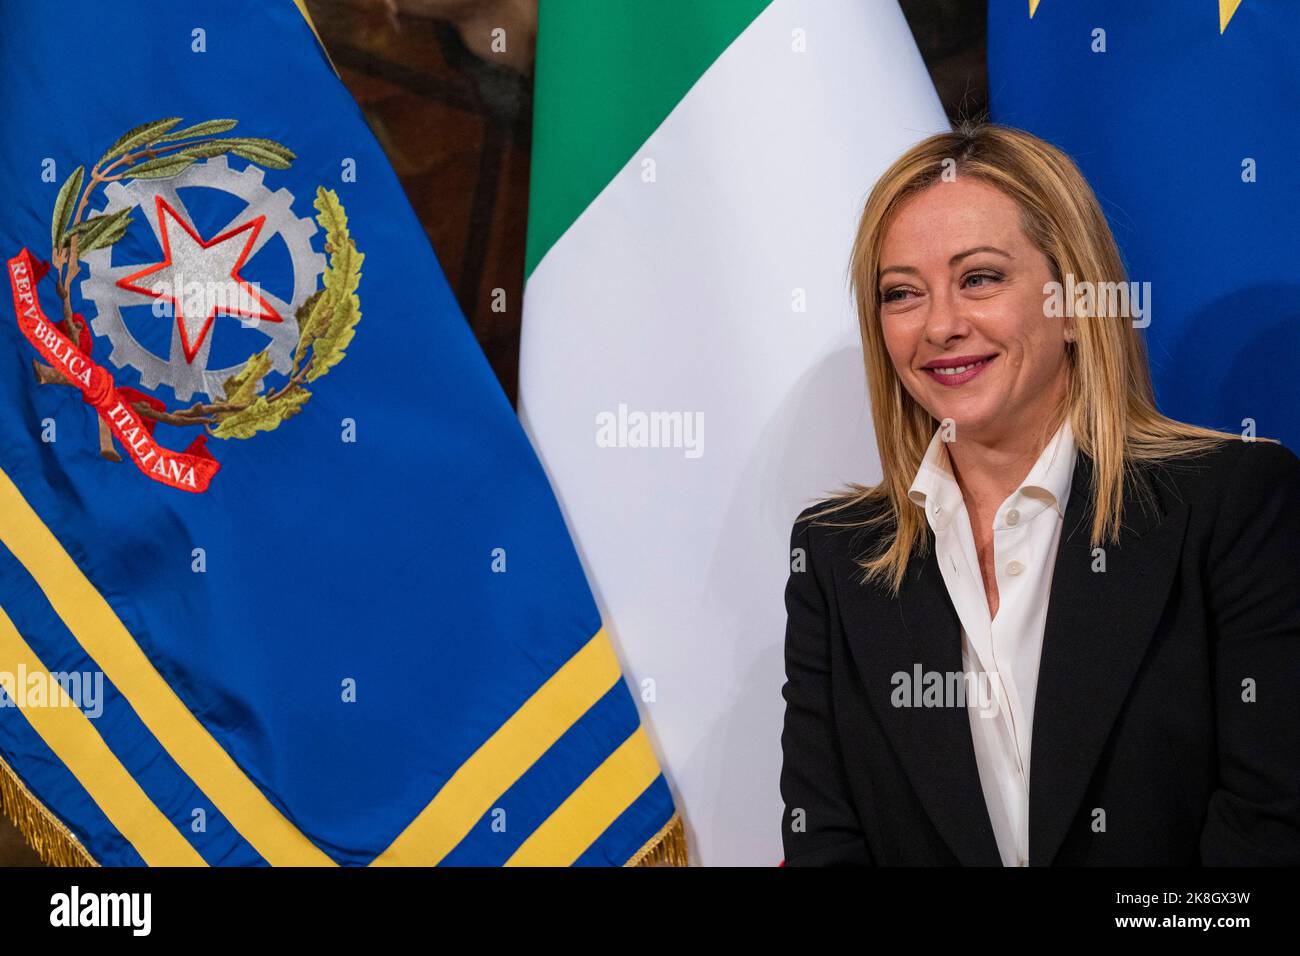 New Italian Premier Giorgia Meloni attends the handover ceremony called ...